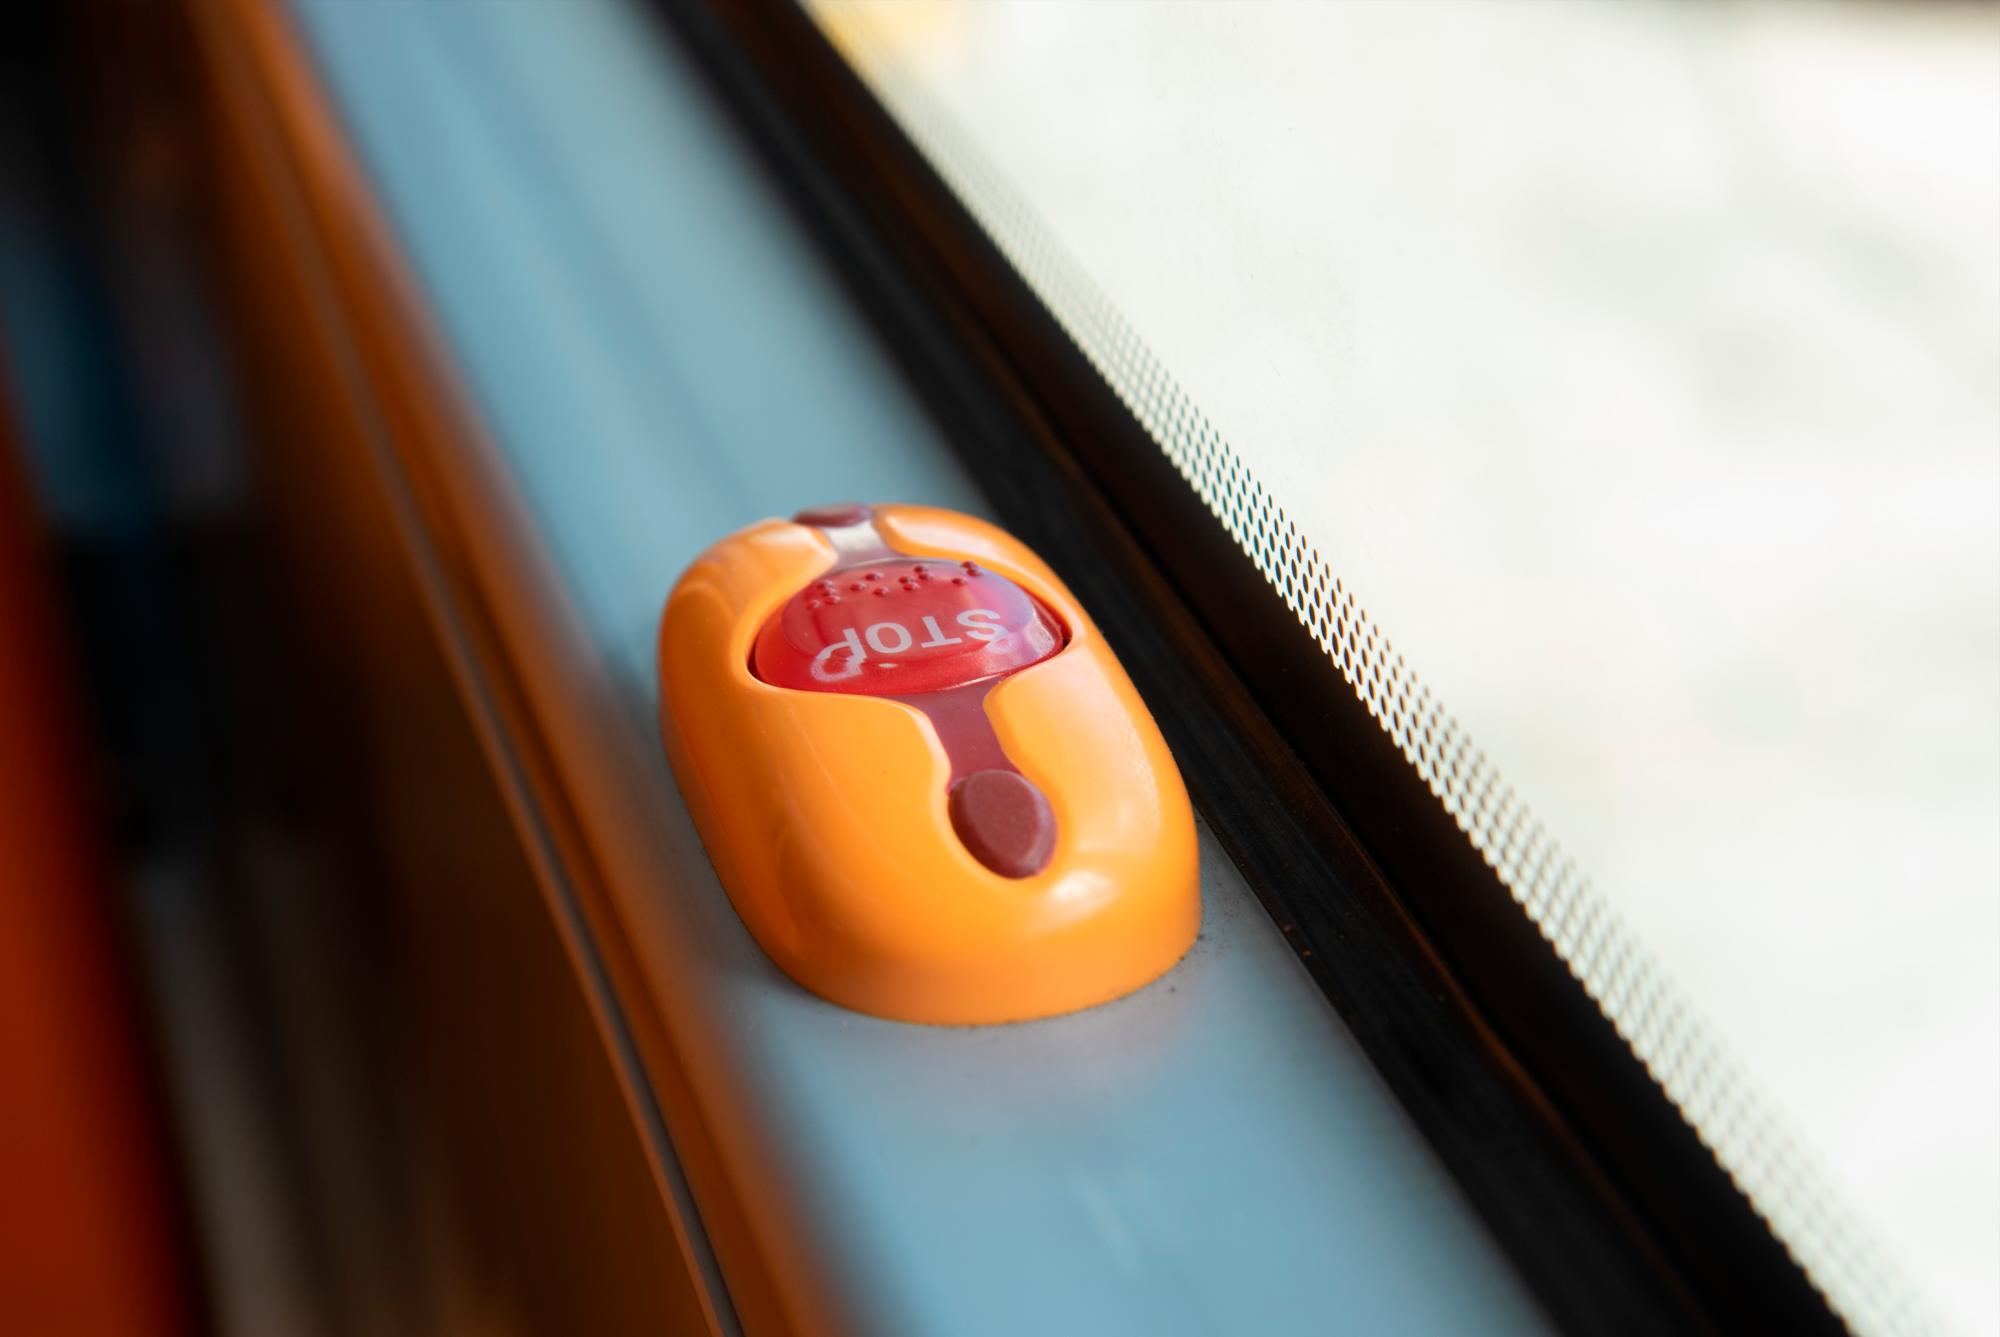 Los pasajeros pueden solicitar su parada sin necesidad de vocear, solo oprimiendo un botón de estos.